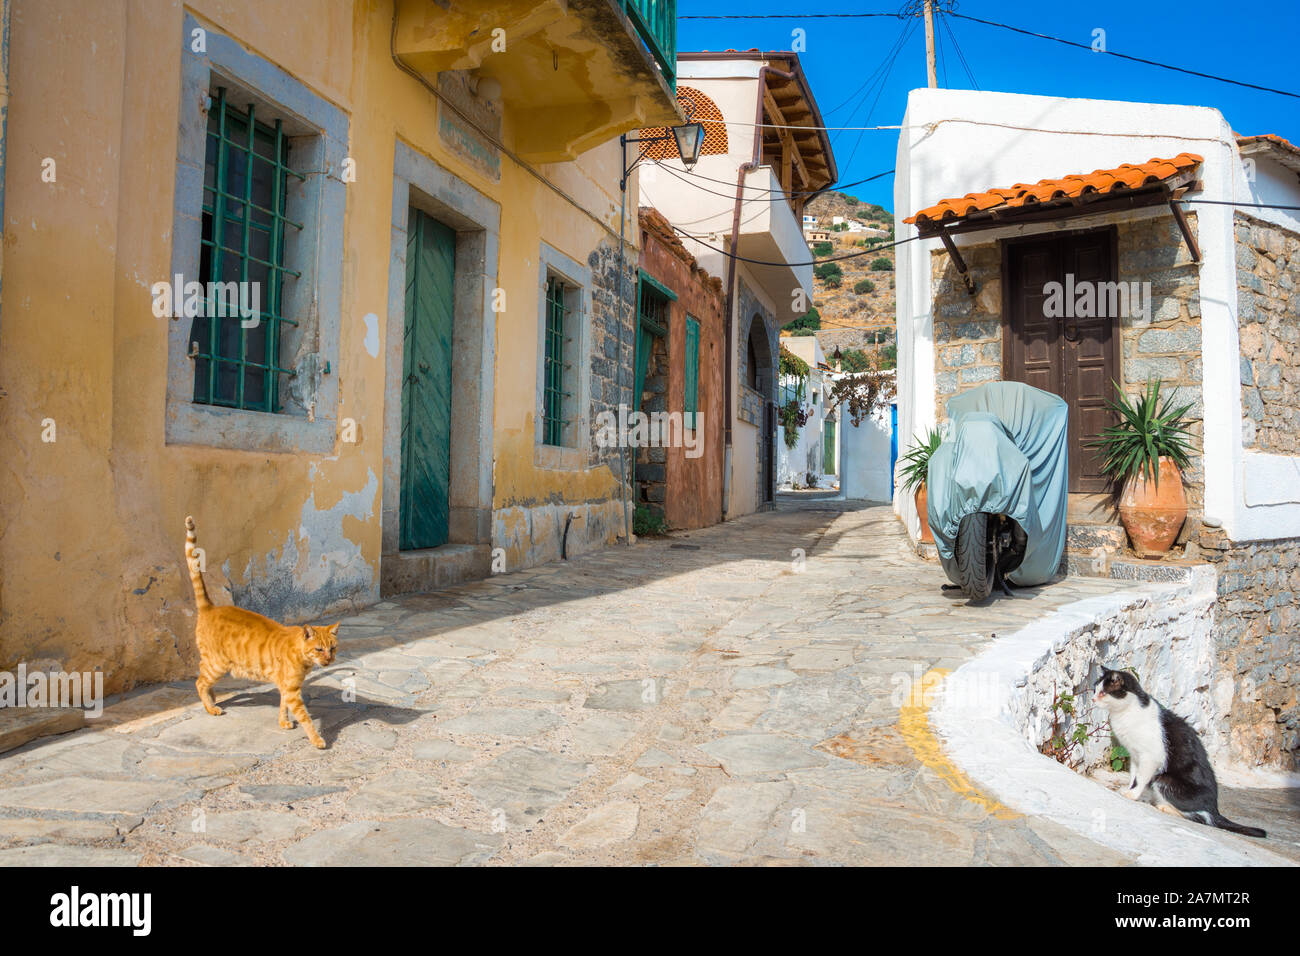 Calle angosta con coloridas casas de piedra en el antiguo pueblo de Pano Elounda, Creta, Grecia. Foto de stock